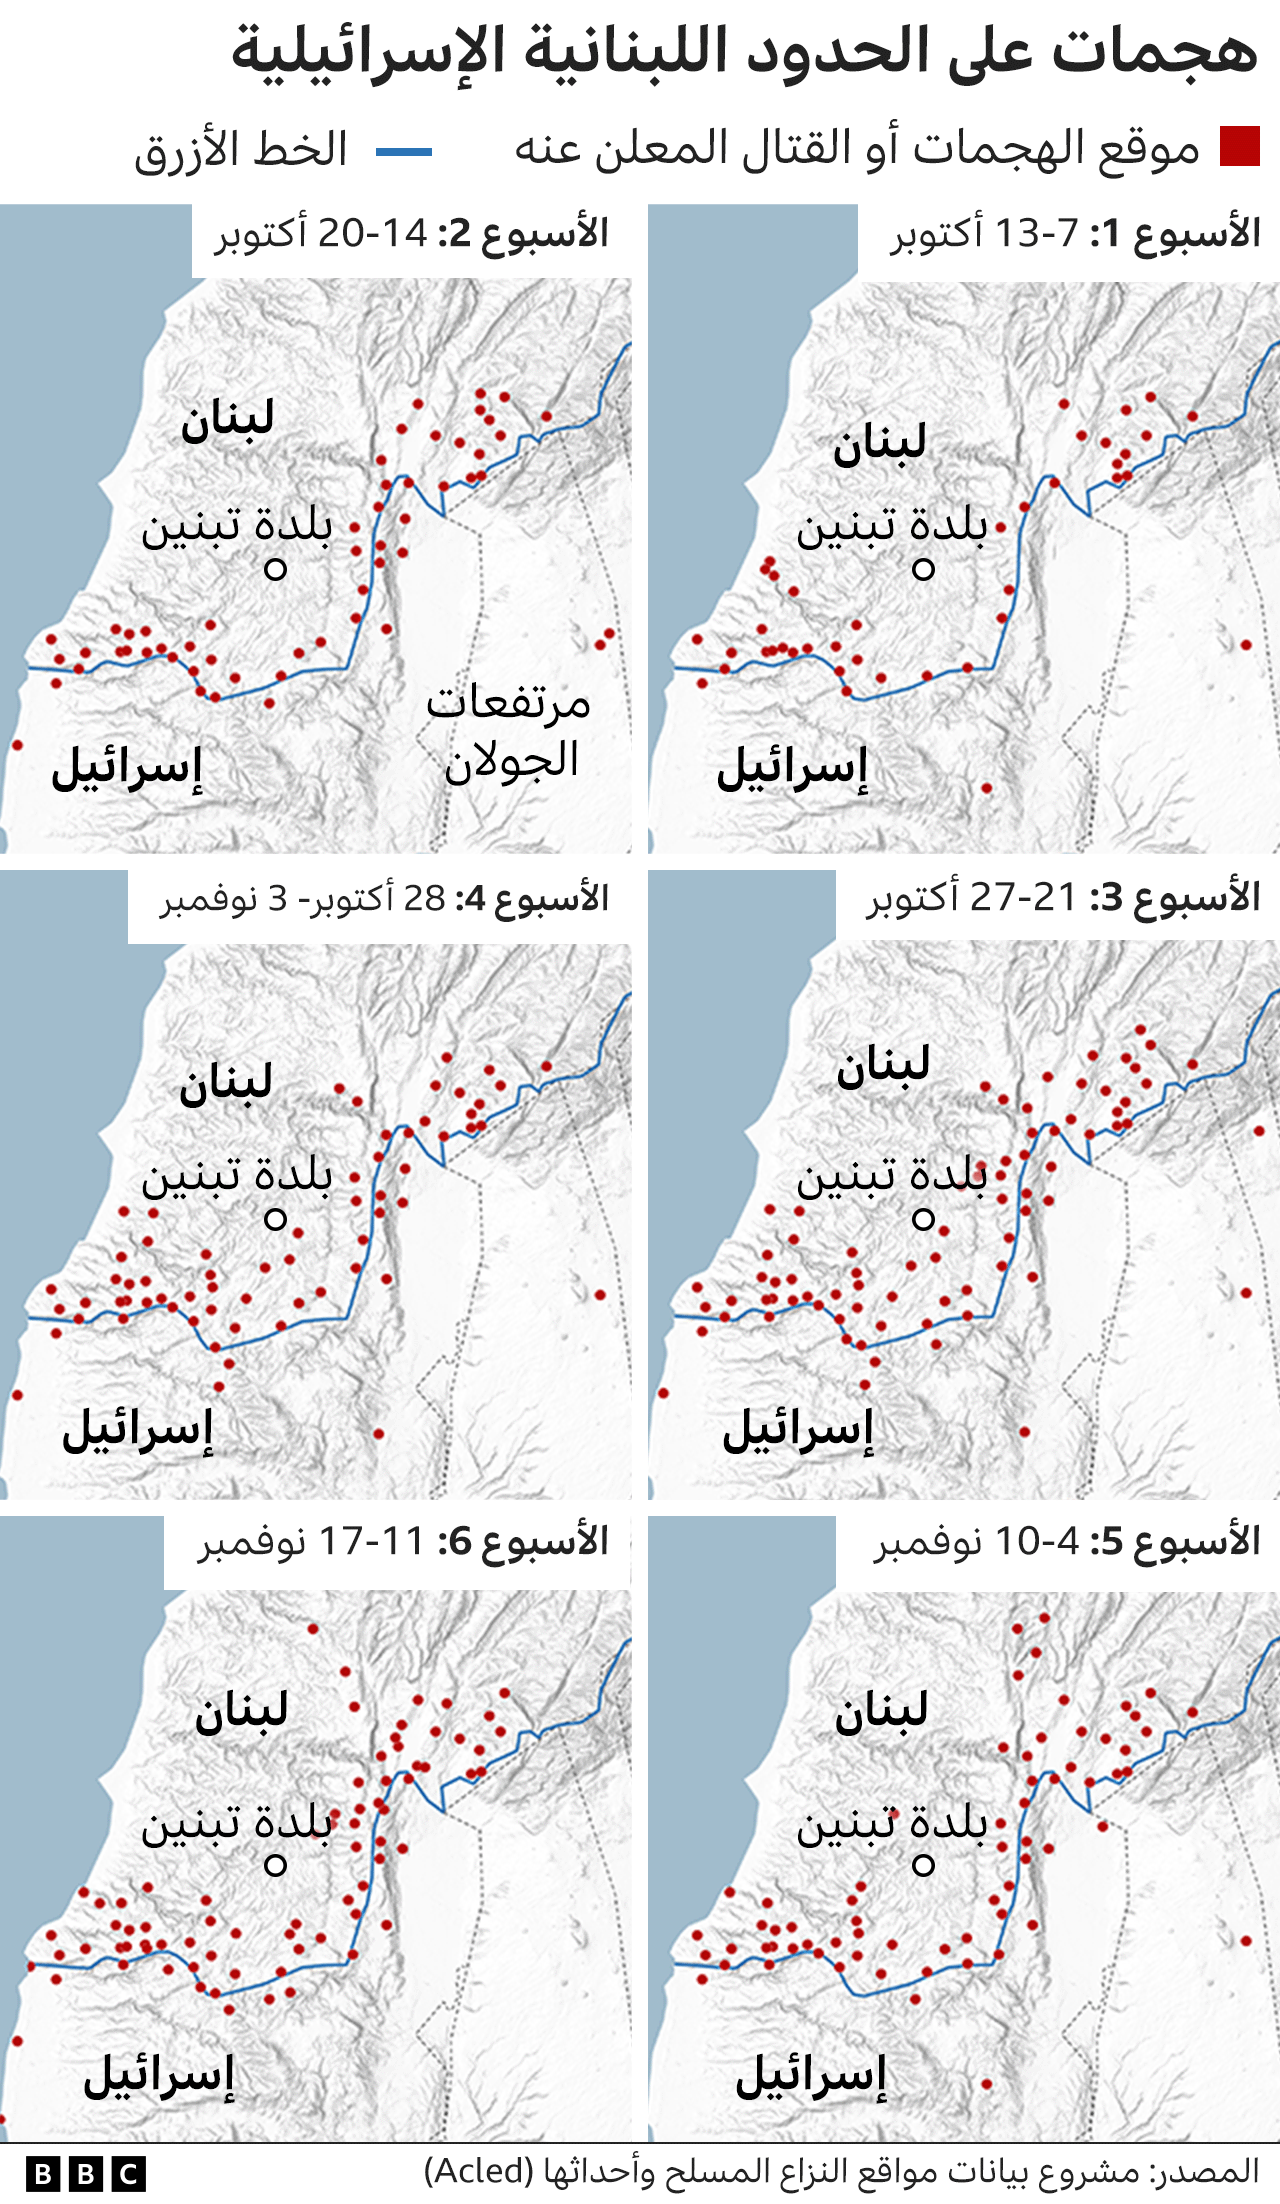 رسم بياني يوضح العدد المتزايد من الهجمات عبر الحدود اللبنانية الإسرائيلية